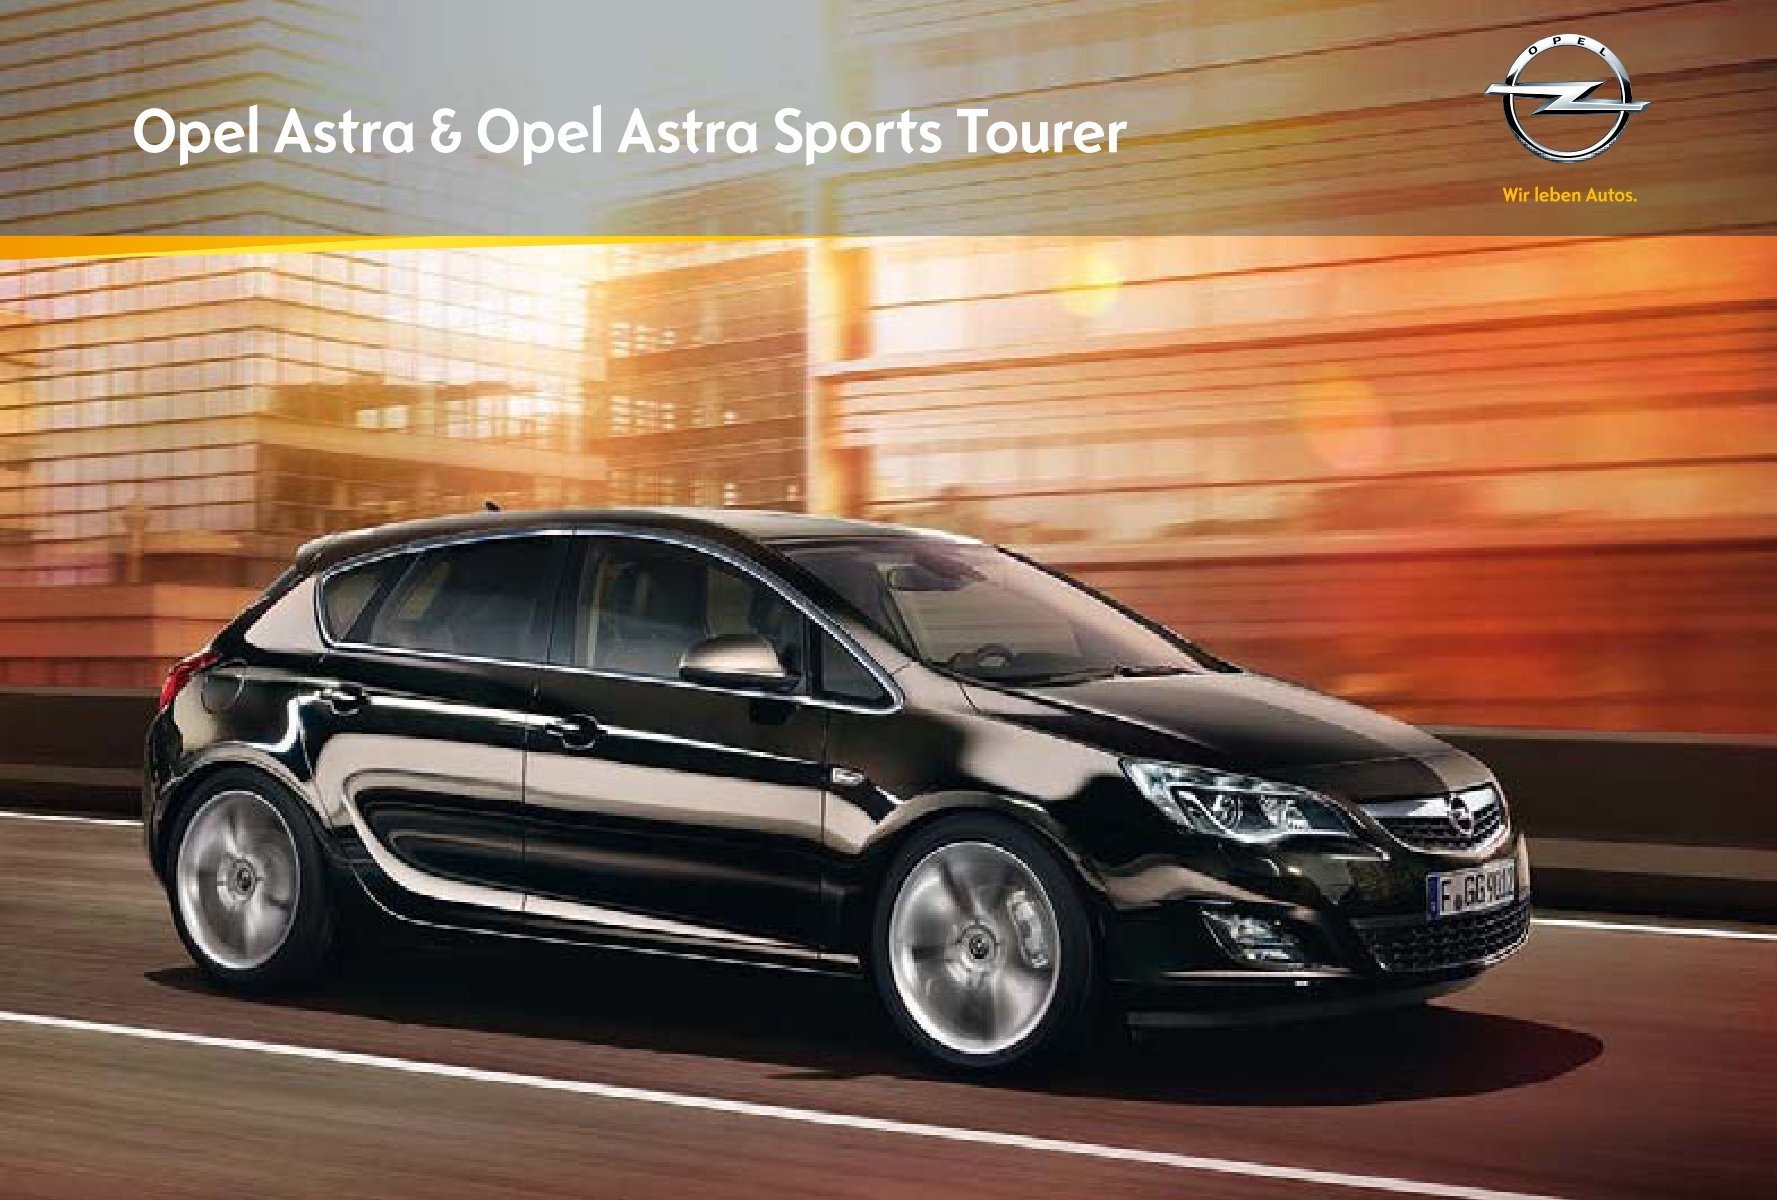 Nouveauté. Spacieux, électrique, astucieux : voici l'Opel Astra Sports  Tourer